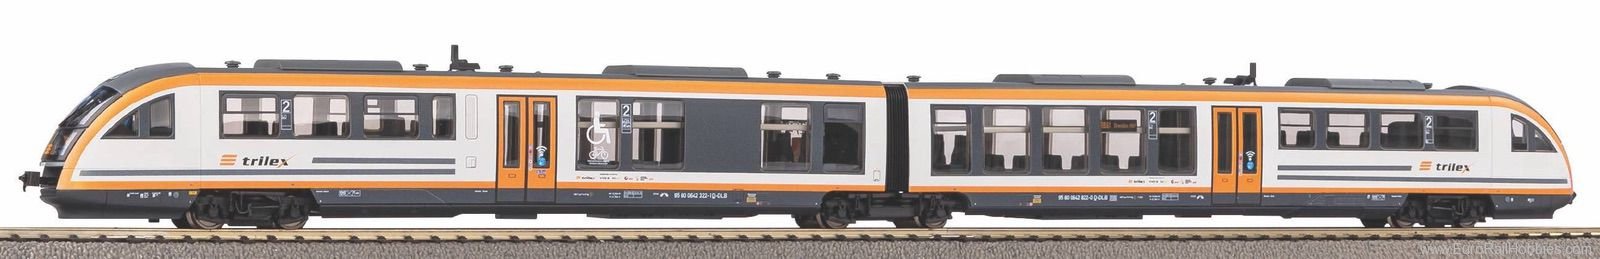 Piko 52923 Diesel railcar Desiro Trilex VI (Marklin AC D